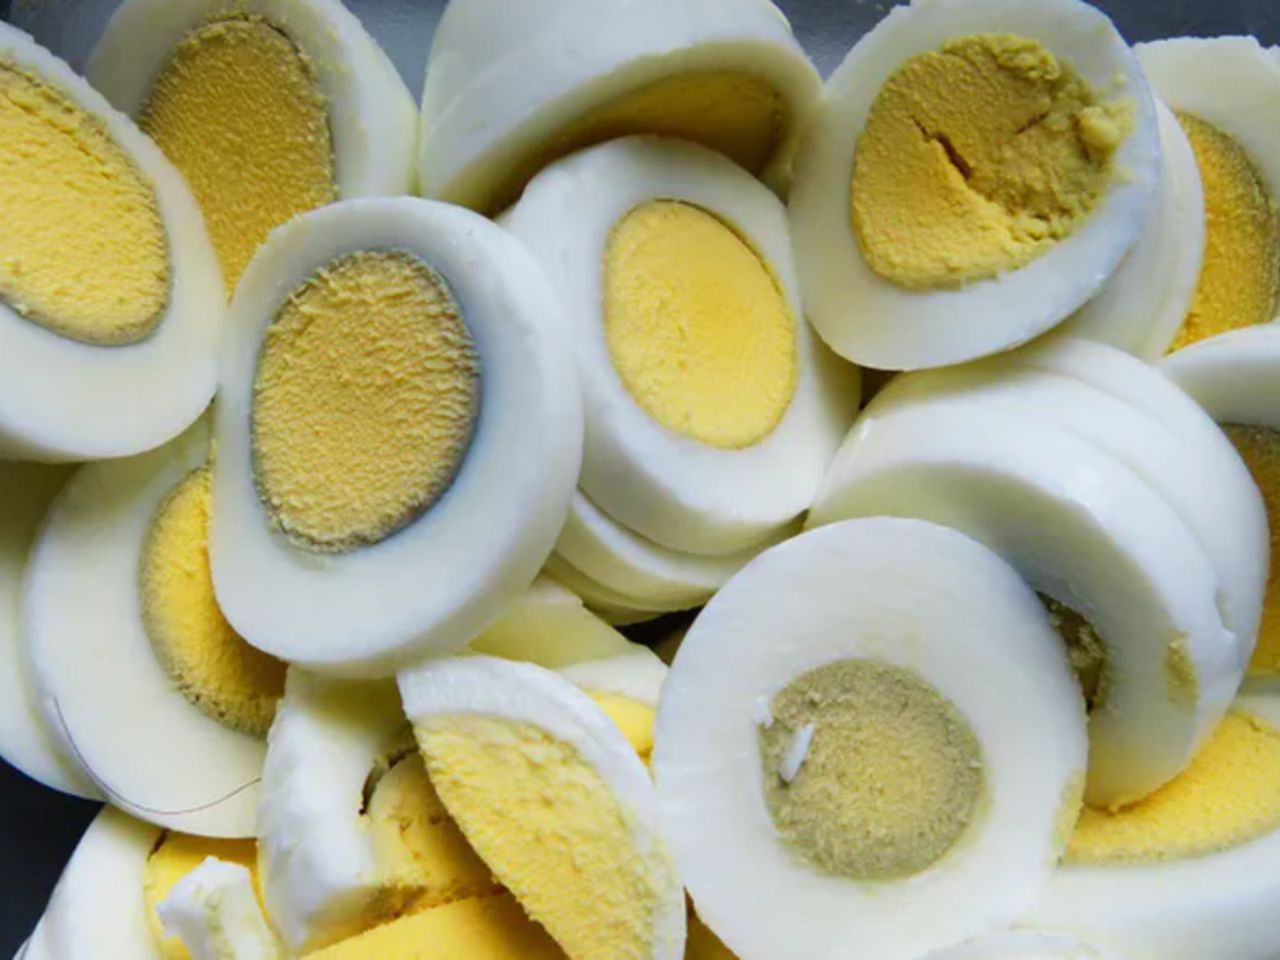 Ile jajek można zjeść? Nie przekraczaj górnej granicy